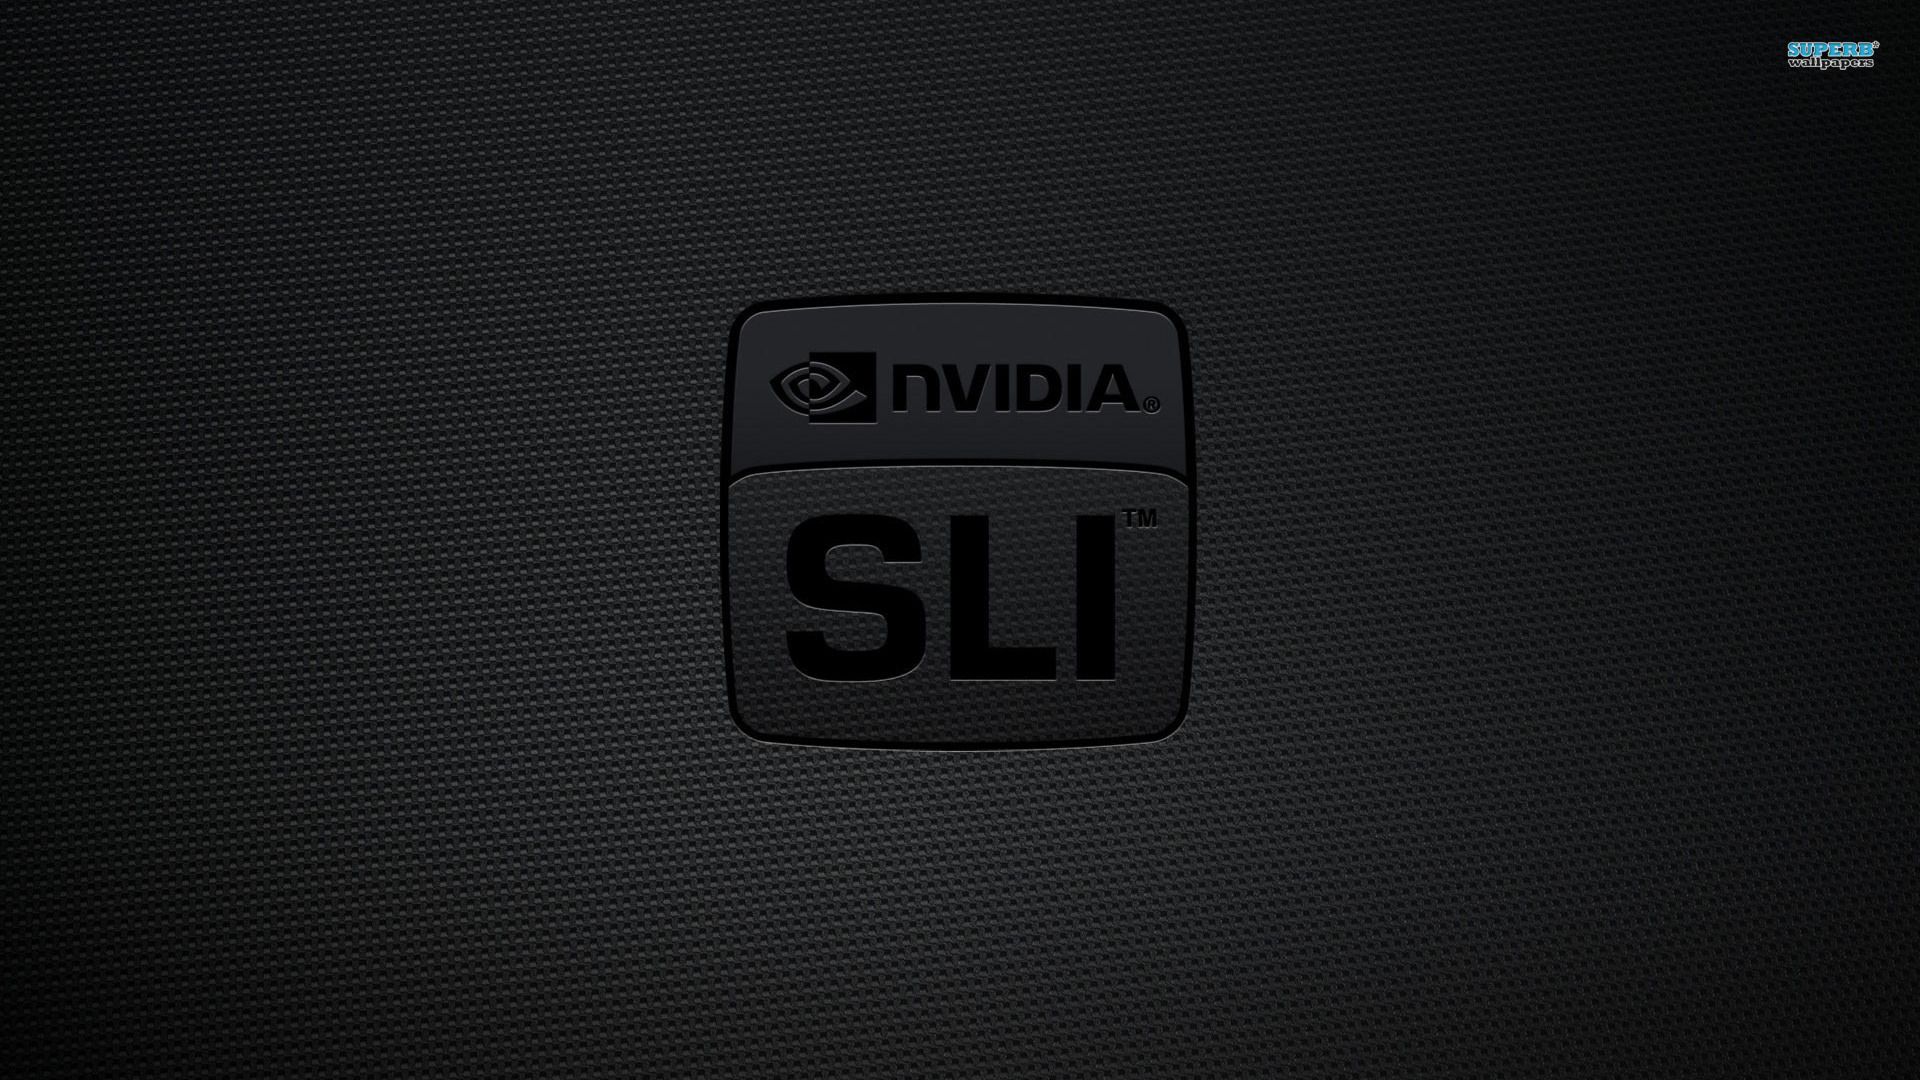 Nvidia SLI wallpaper - Computer wallpapers - #11486